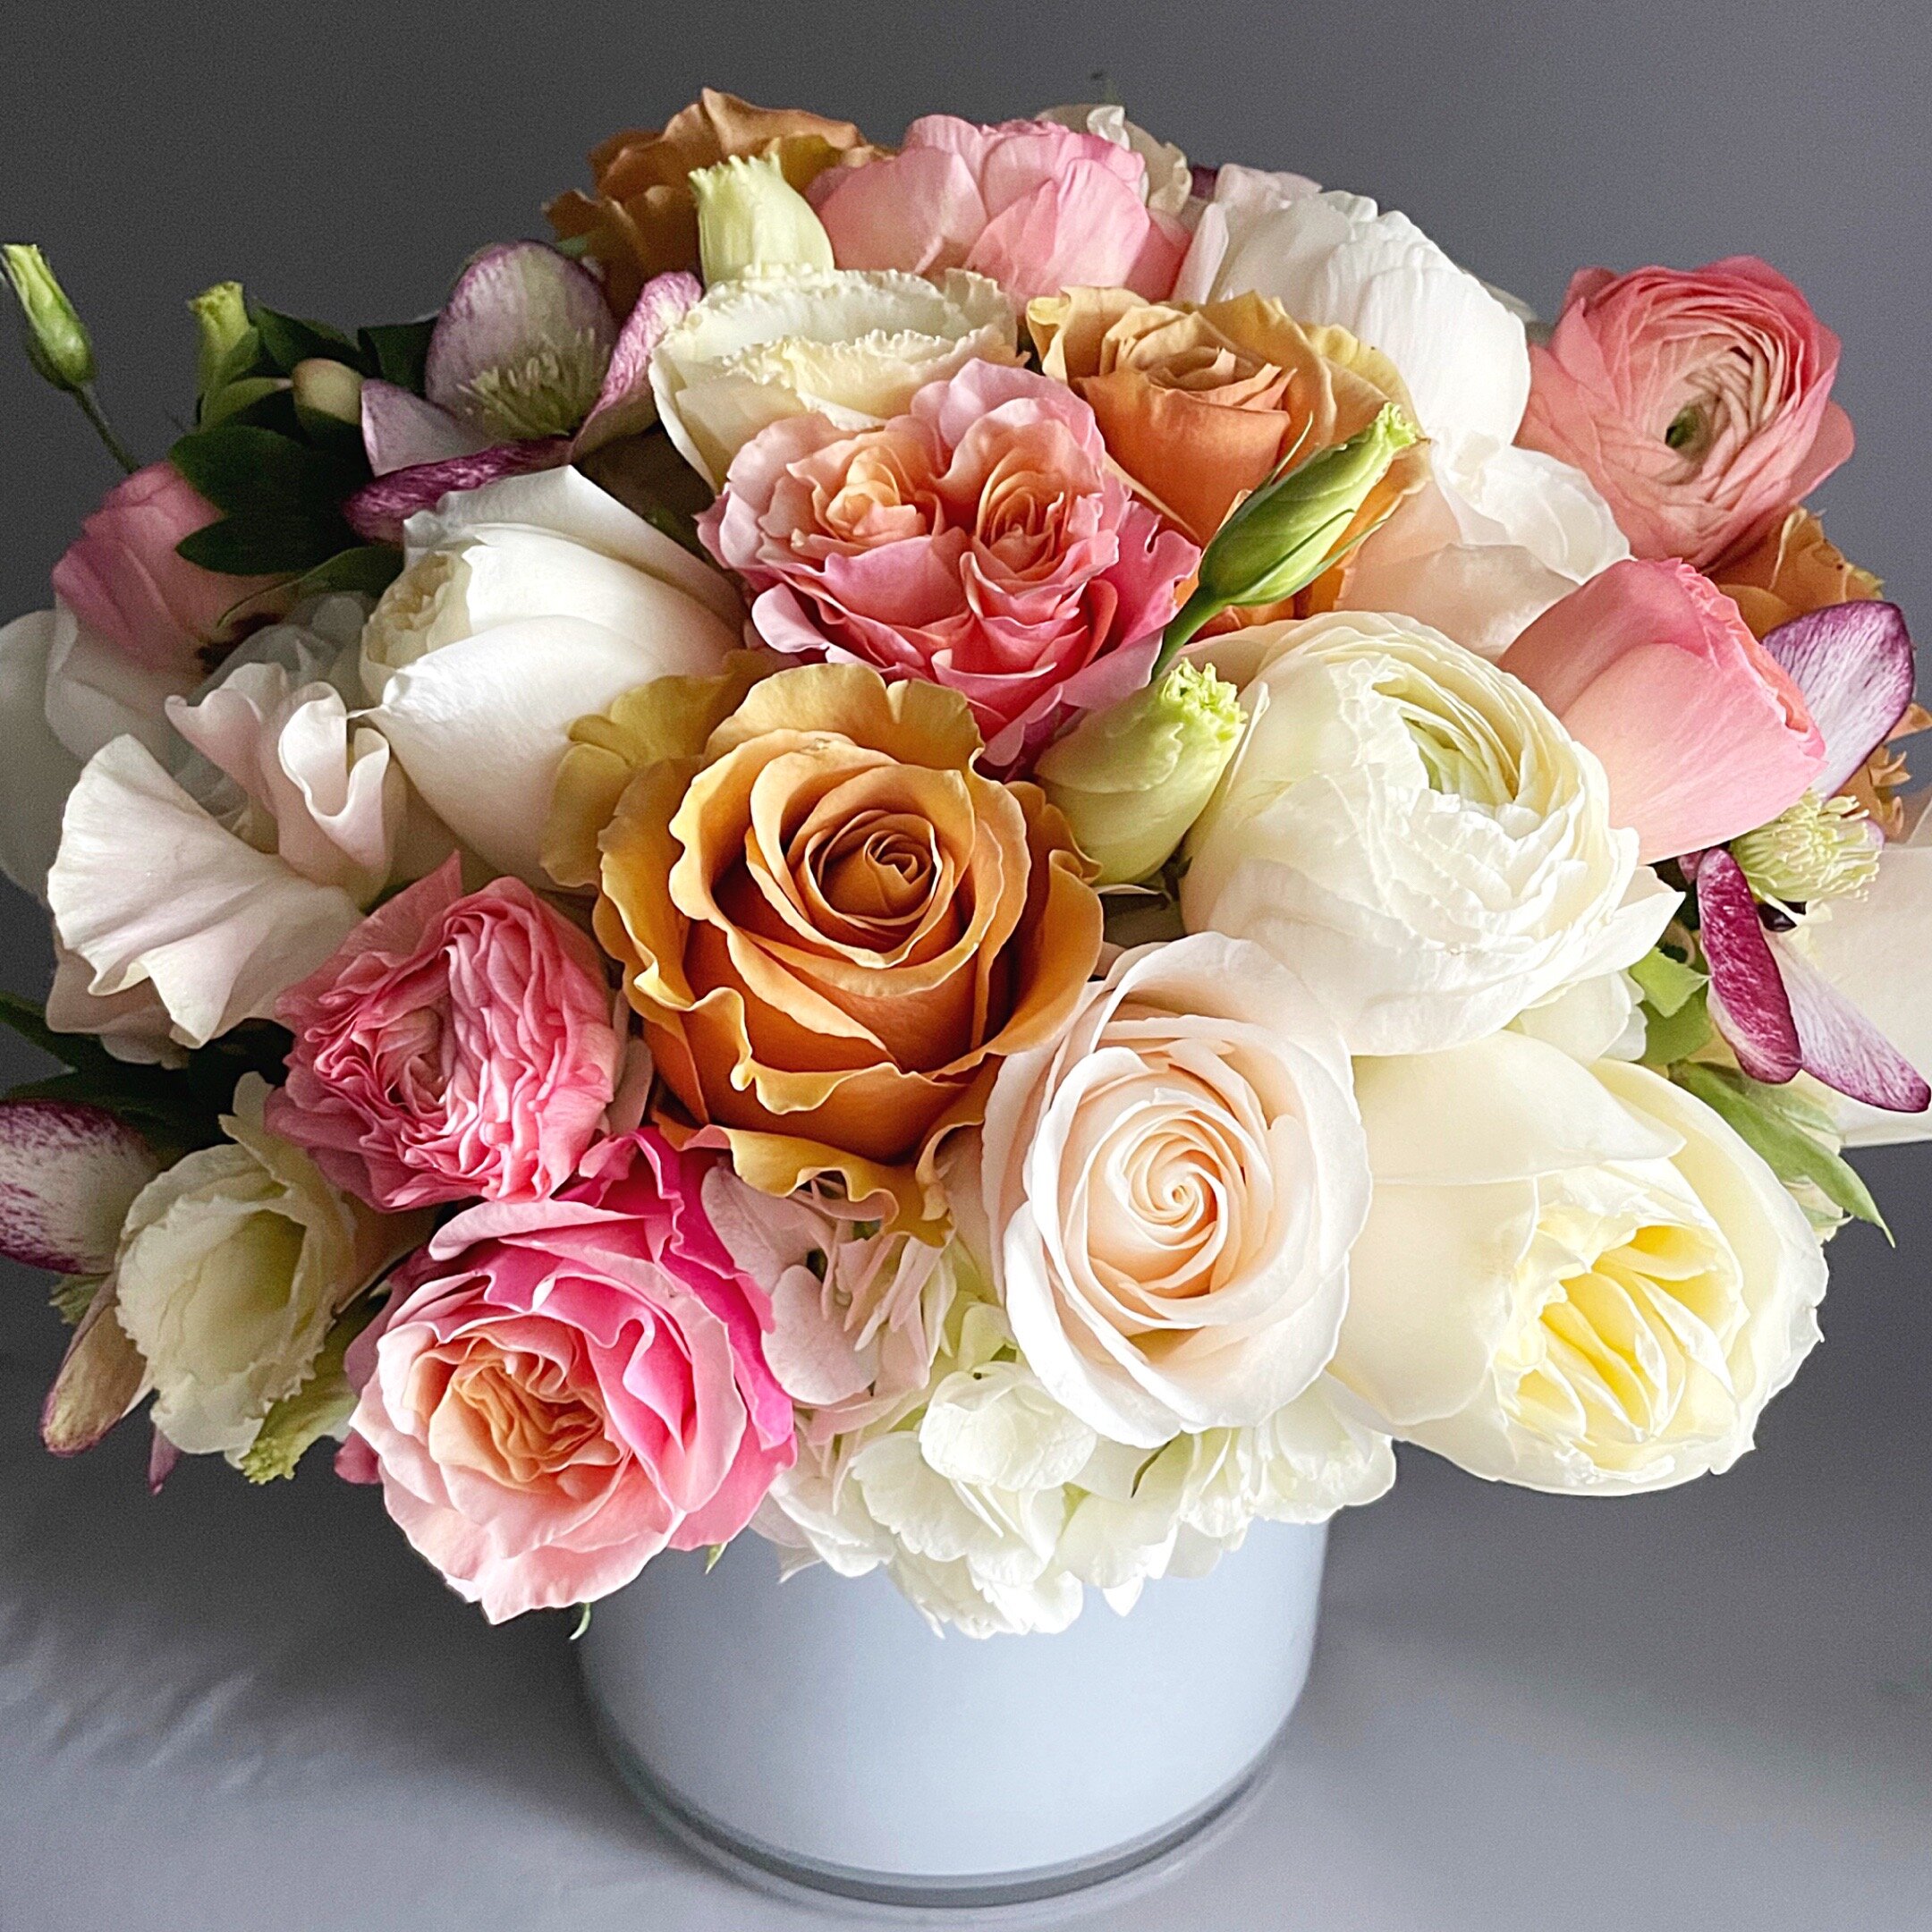 Multicolored Magnificent Bouquet - Atelier Ashley